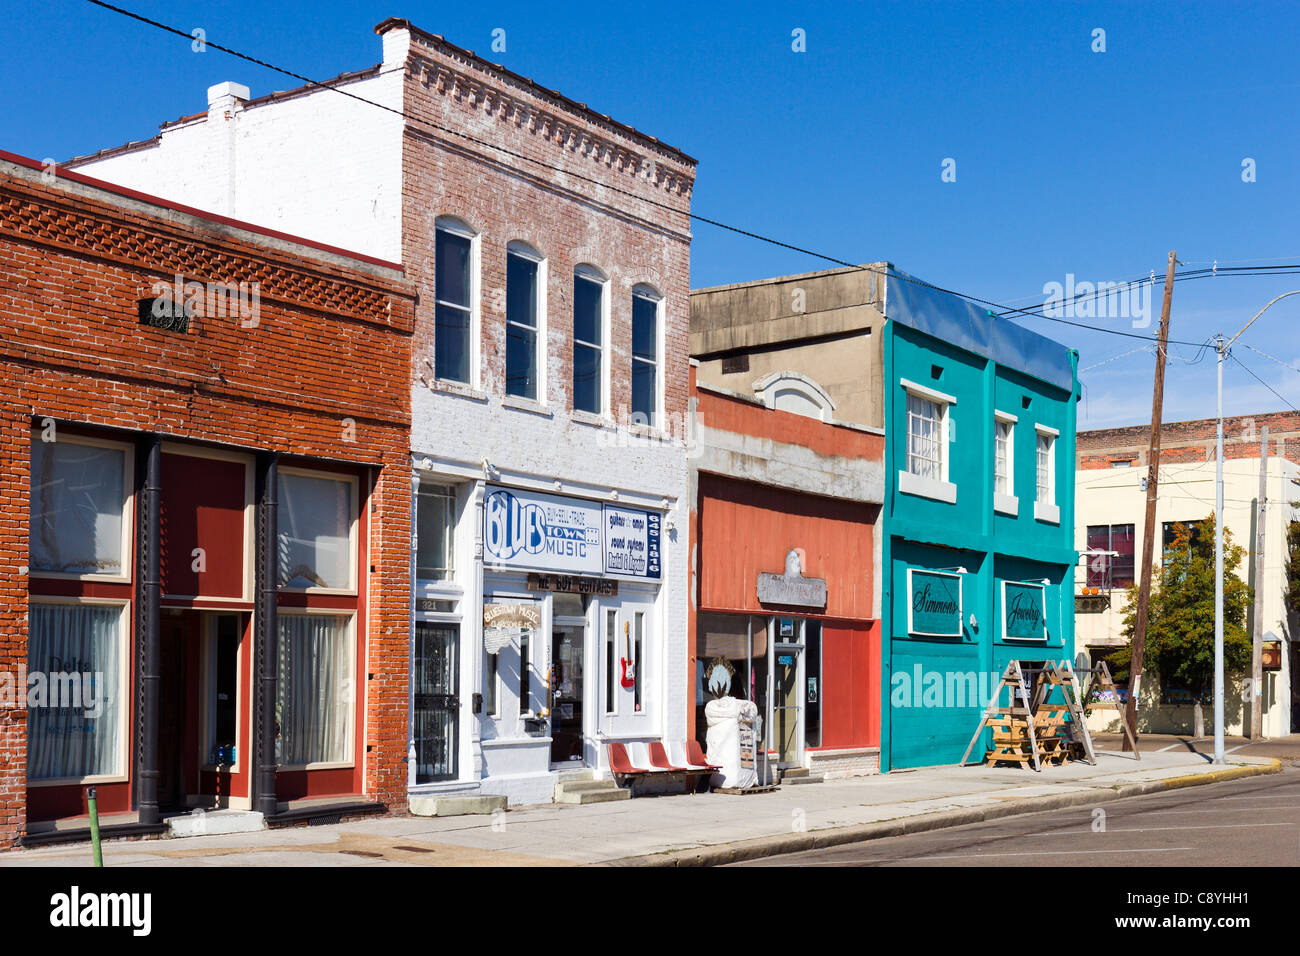 Negozi nel quartiere storico, Delta Avenue, Clarksdale, Mississippi, STATI UNITI D'AMERICA Foto Stock